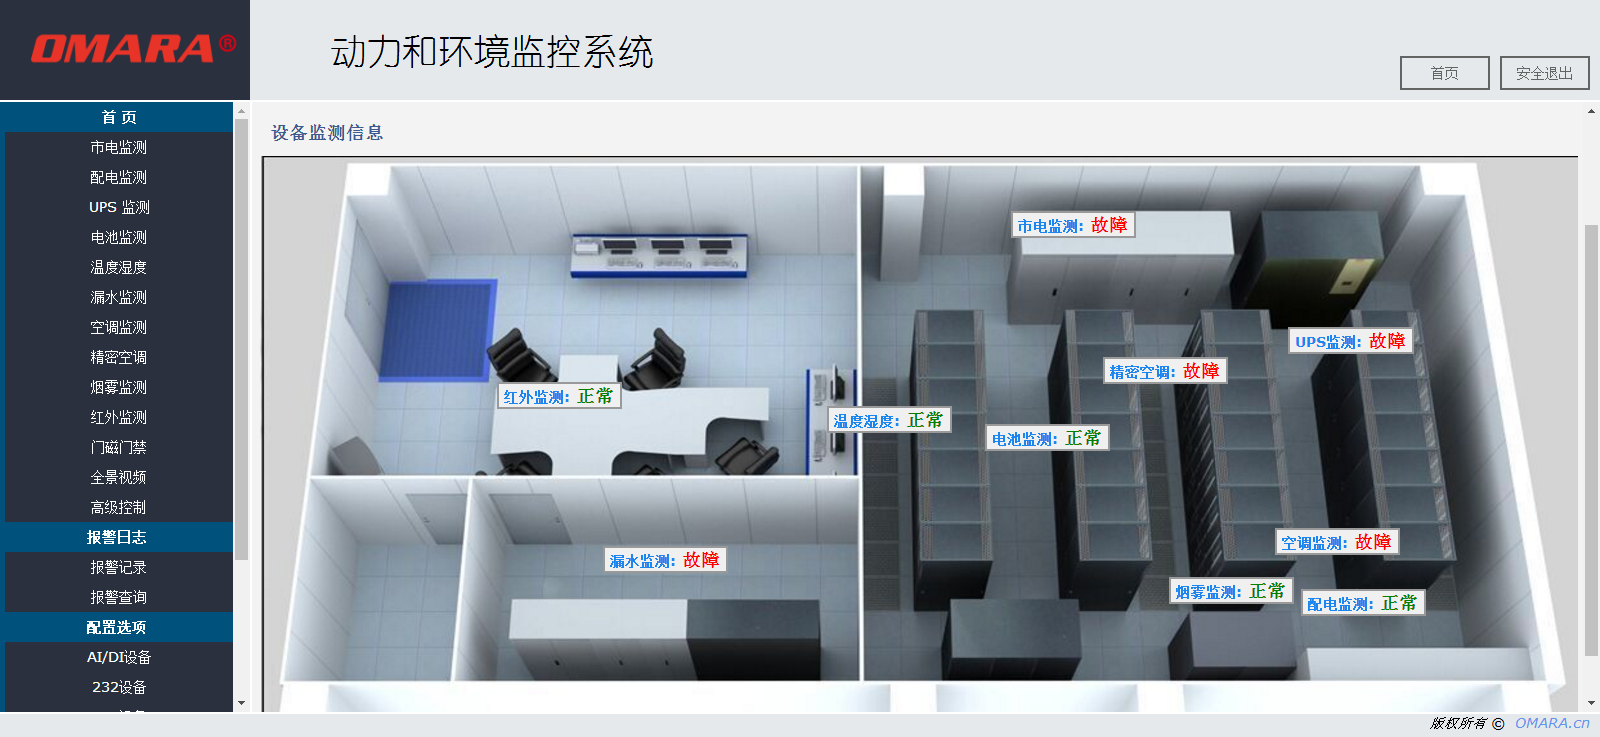 机房智能巡检安全管理系统的展示截图